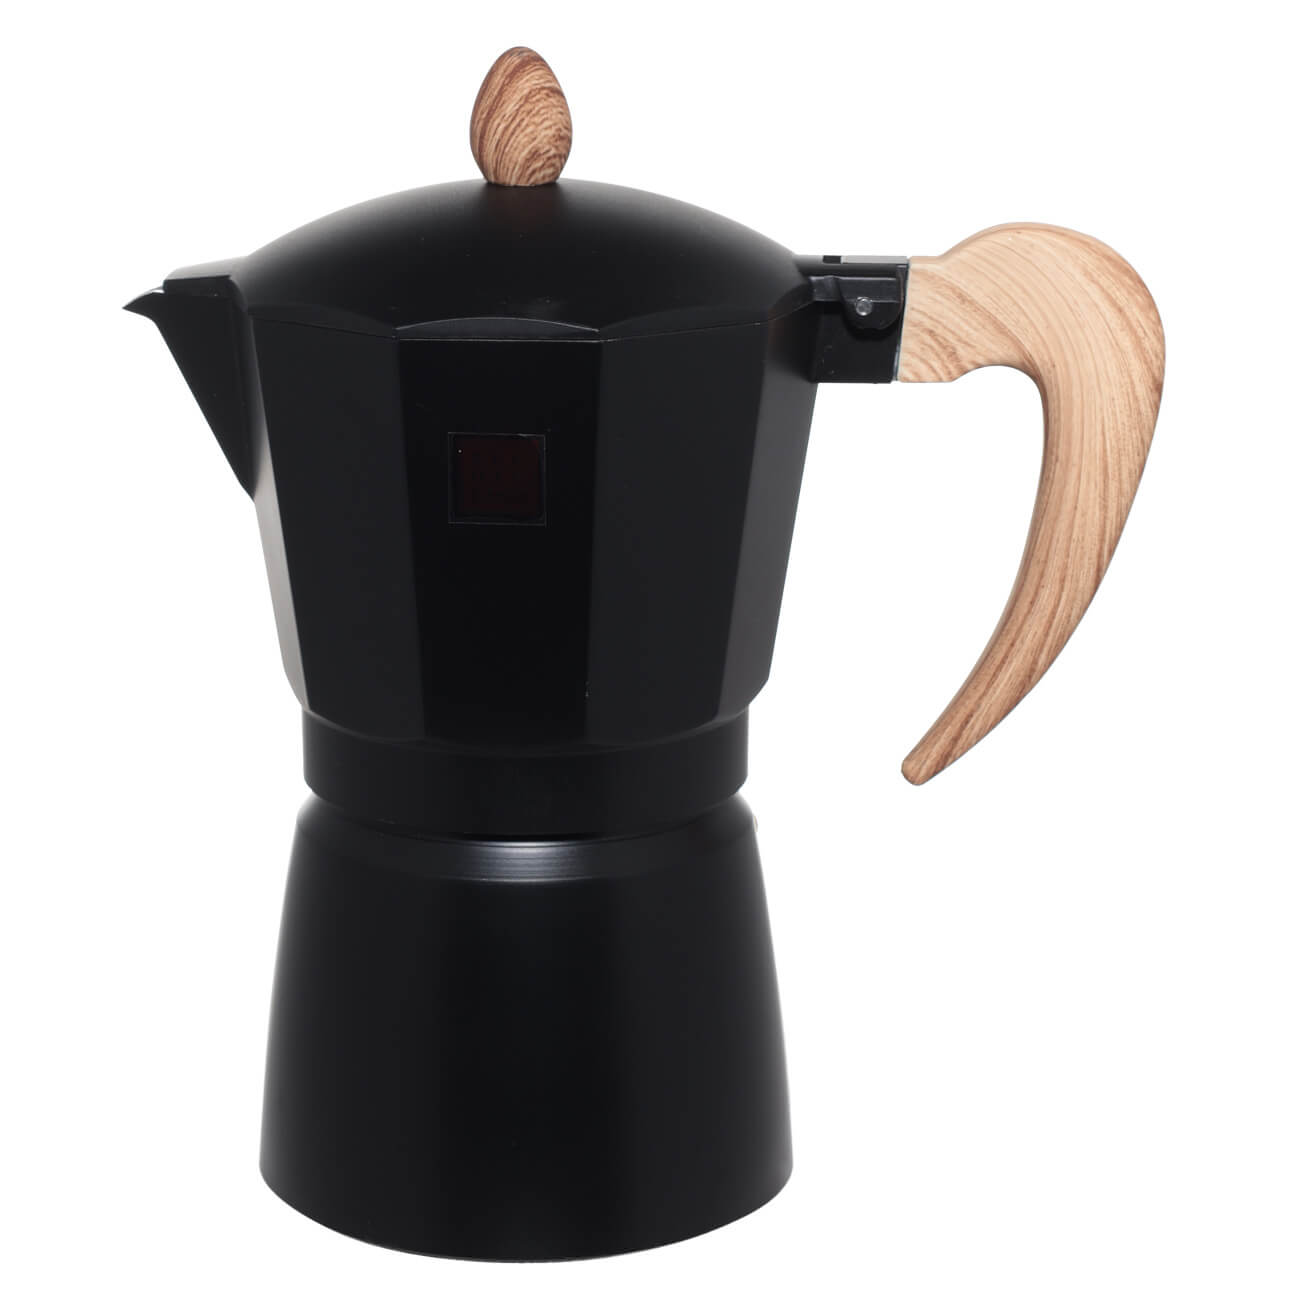 Кофеварка гейзерная, 300 мл, алюминий/пластик, черная, Espresso гейзерная кофеварка rondell